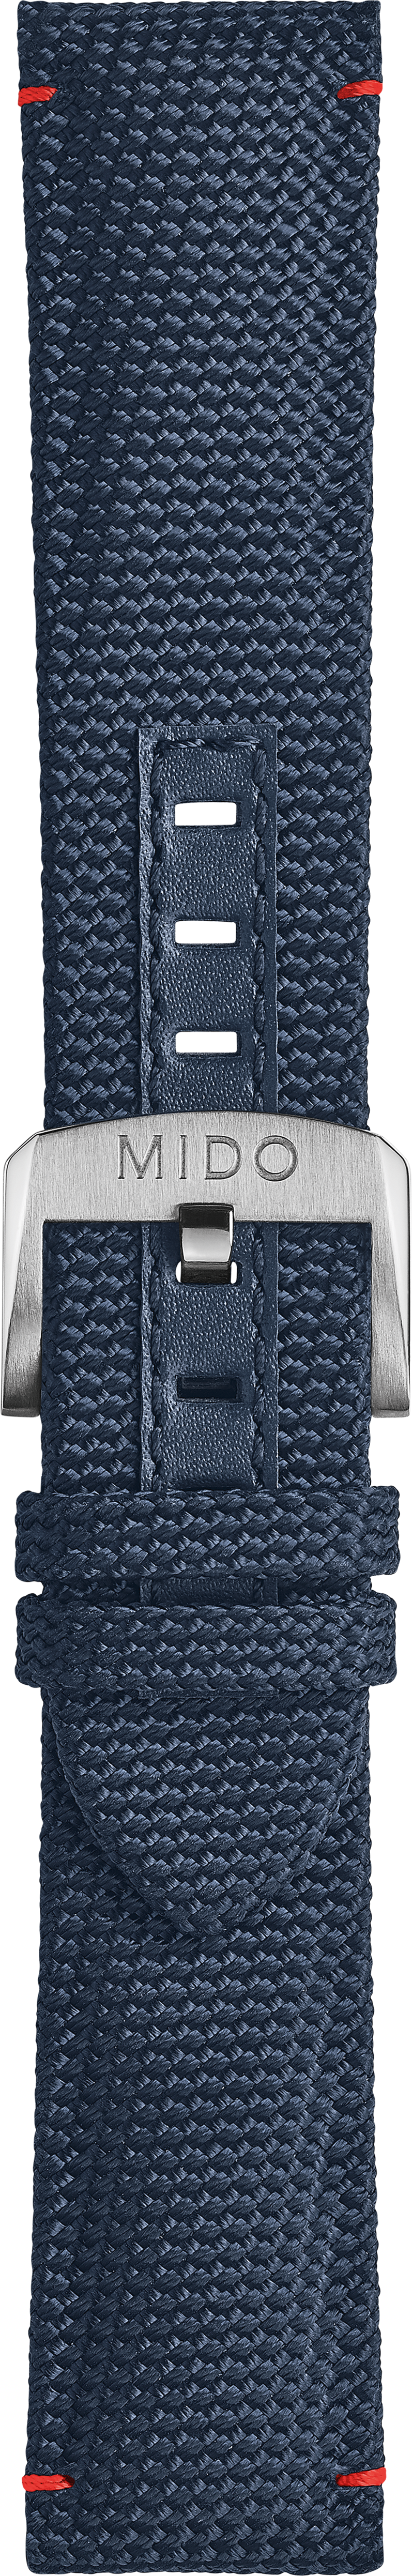 Mido Ocean Star blaues Kalbsleder-Armband